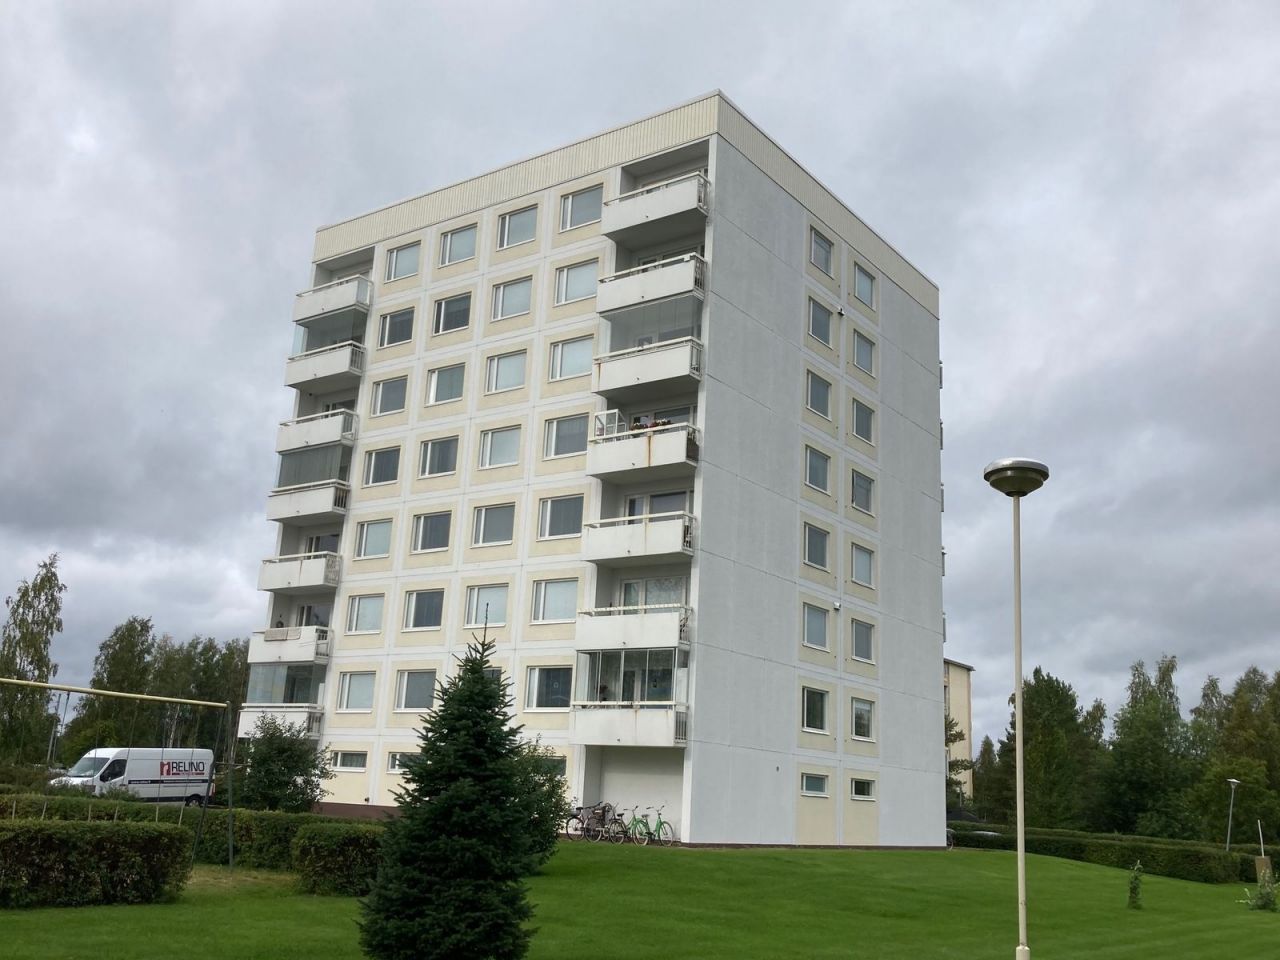 Flat in Oulu, Finland, 75 sq.m - picture 1